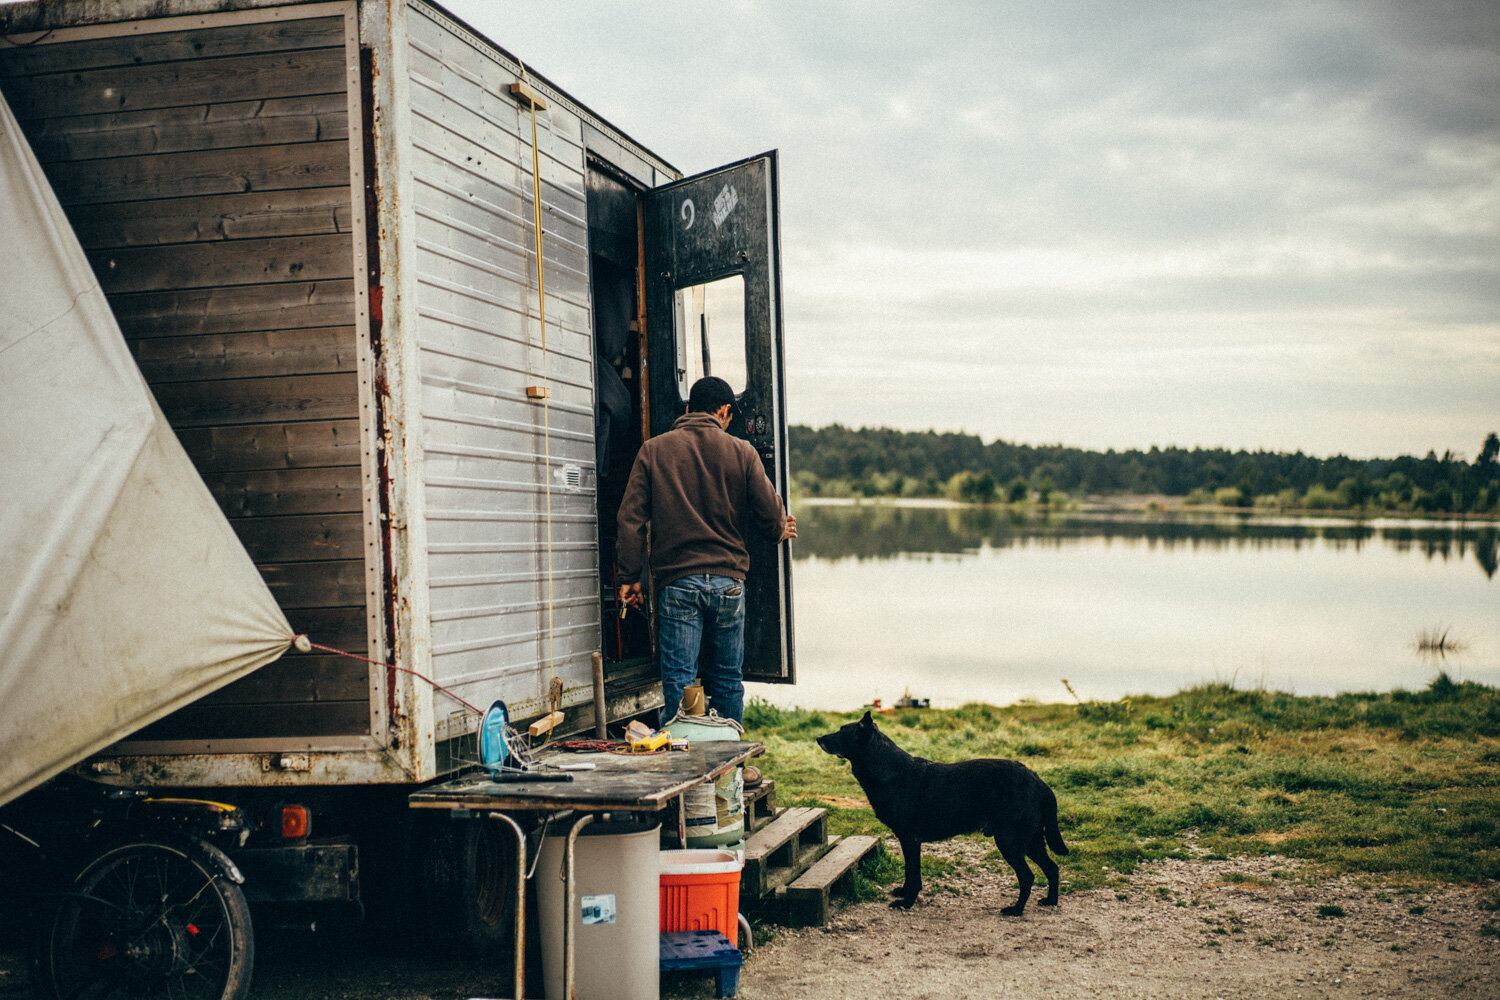  Un jeune homme vit dans un camion au bord d'un lac d'un village isolé en périphérie de Bordeaux. Une bénévole vient lui porter des chèques services. Avec Caritas France. Martillac, le 7 avril 2020 // A young man lives in a truck by a lake in a remot